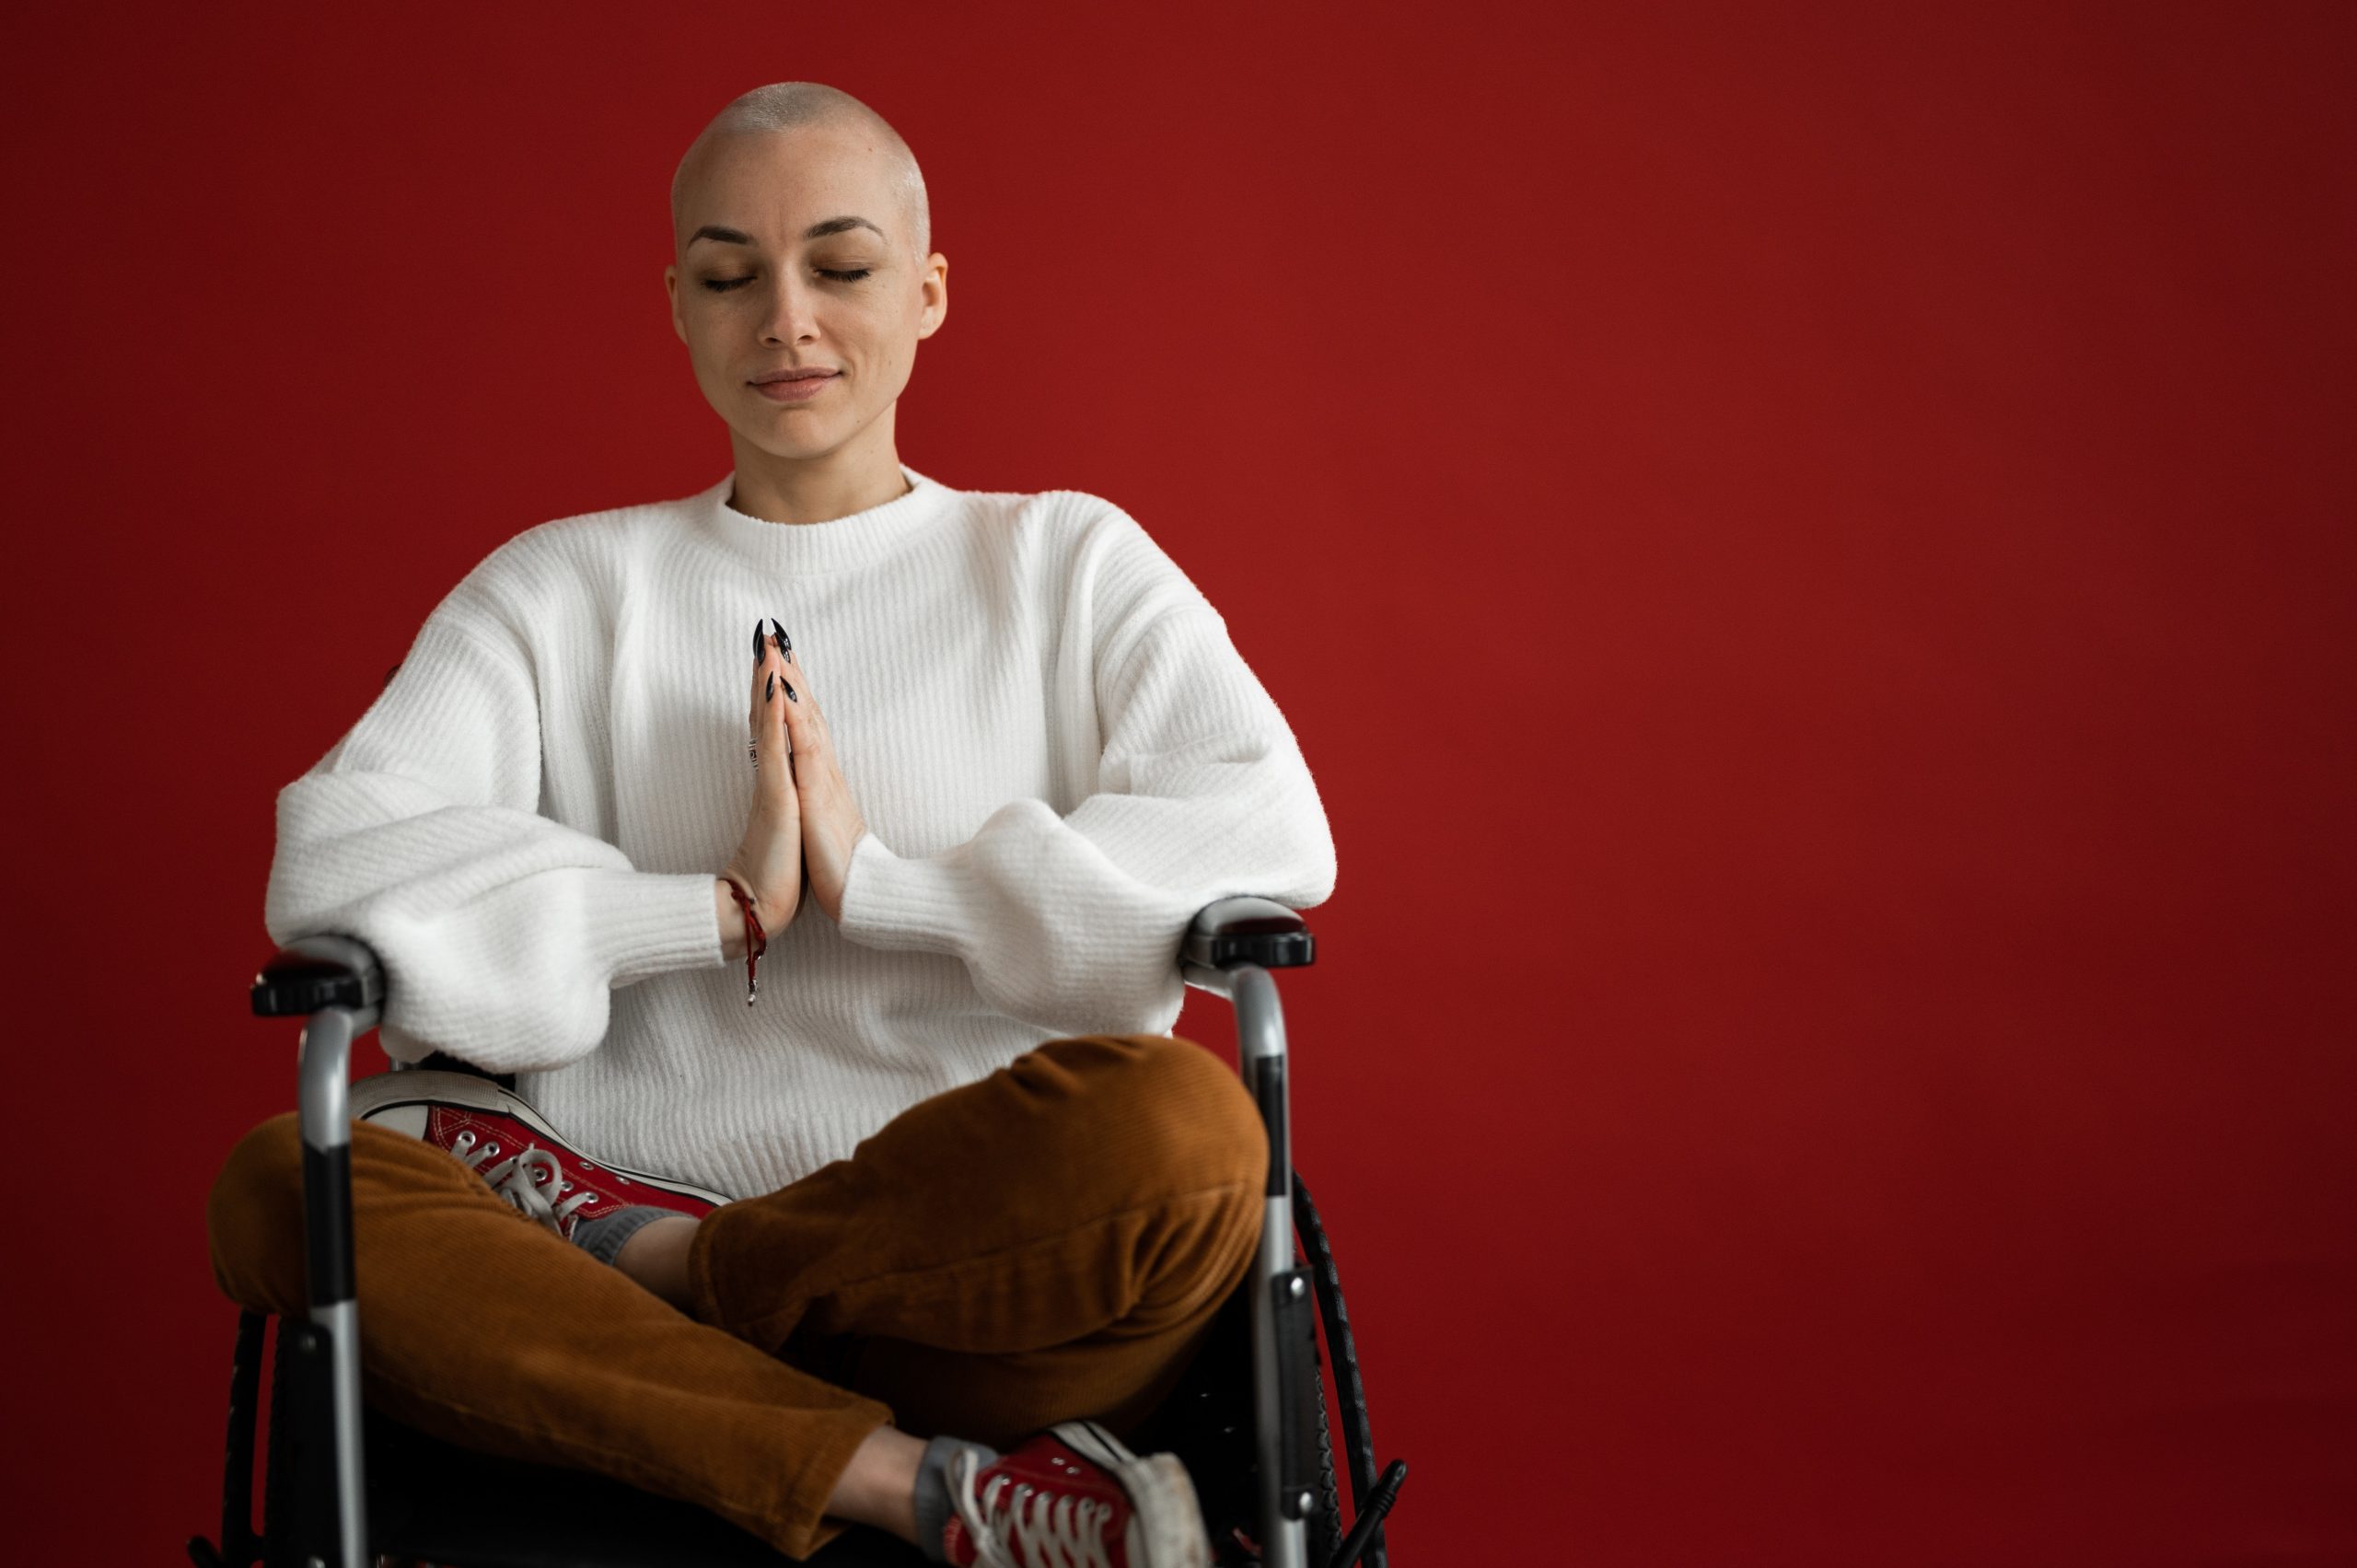 Beitragsbild zum Artikel "Yoga und Krebs" - Junge Frau mit kurzen Haaren meditiert im Rollstuhl